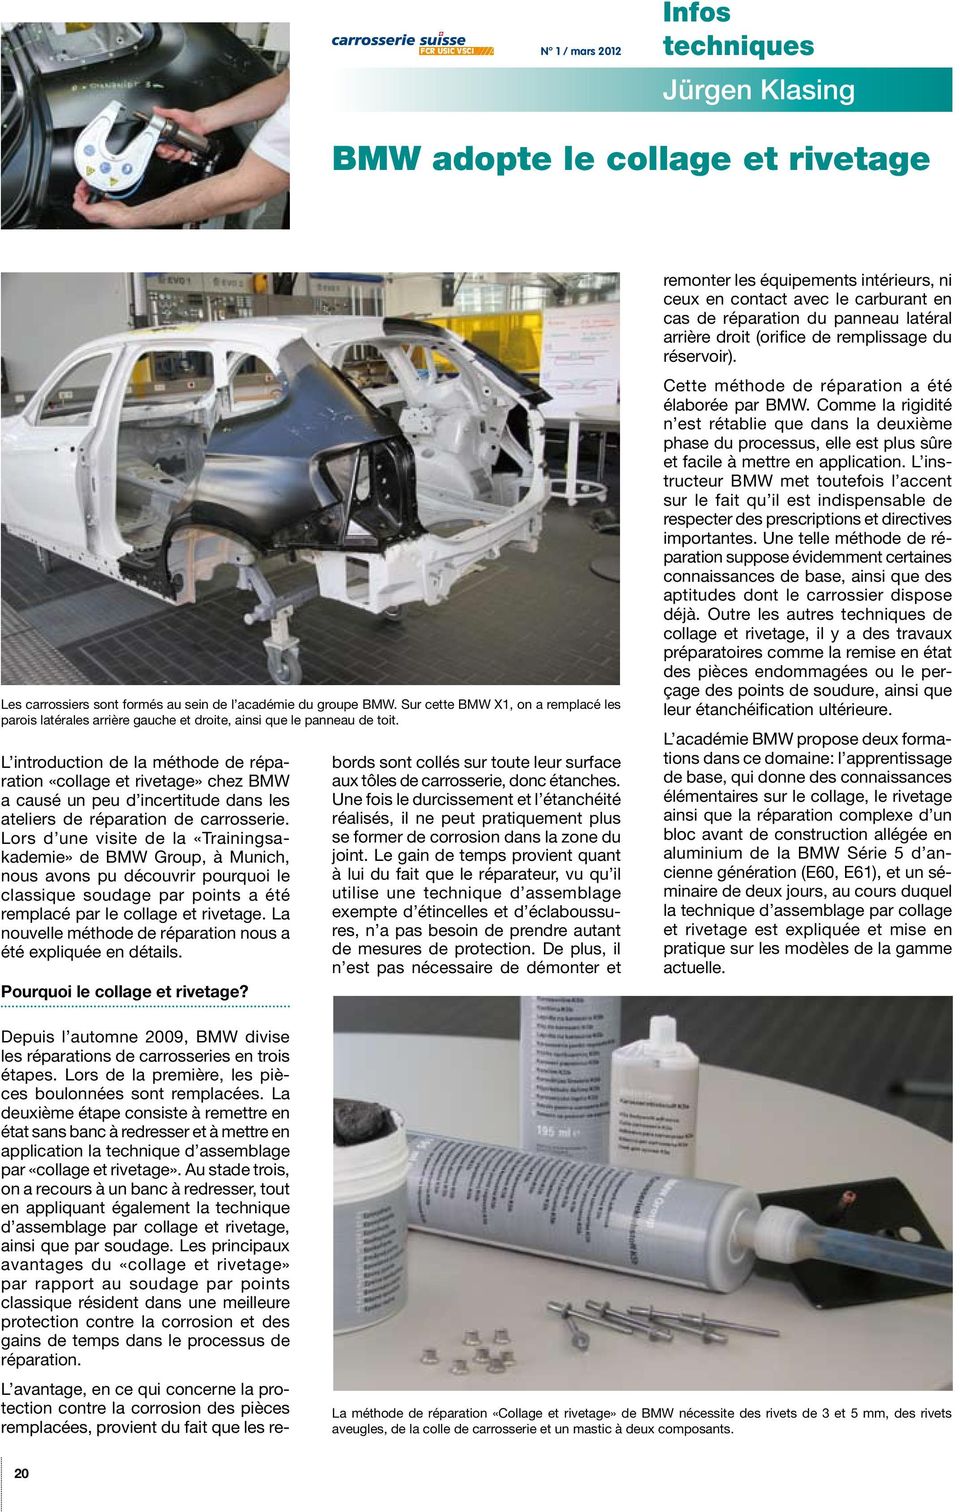 L introduction de la méthode de réparation «collage et rivetage» chez BMW a causé un peu d incertitude dans les ateliers de réparation de carrosserie.